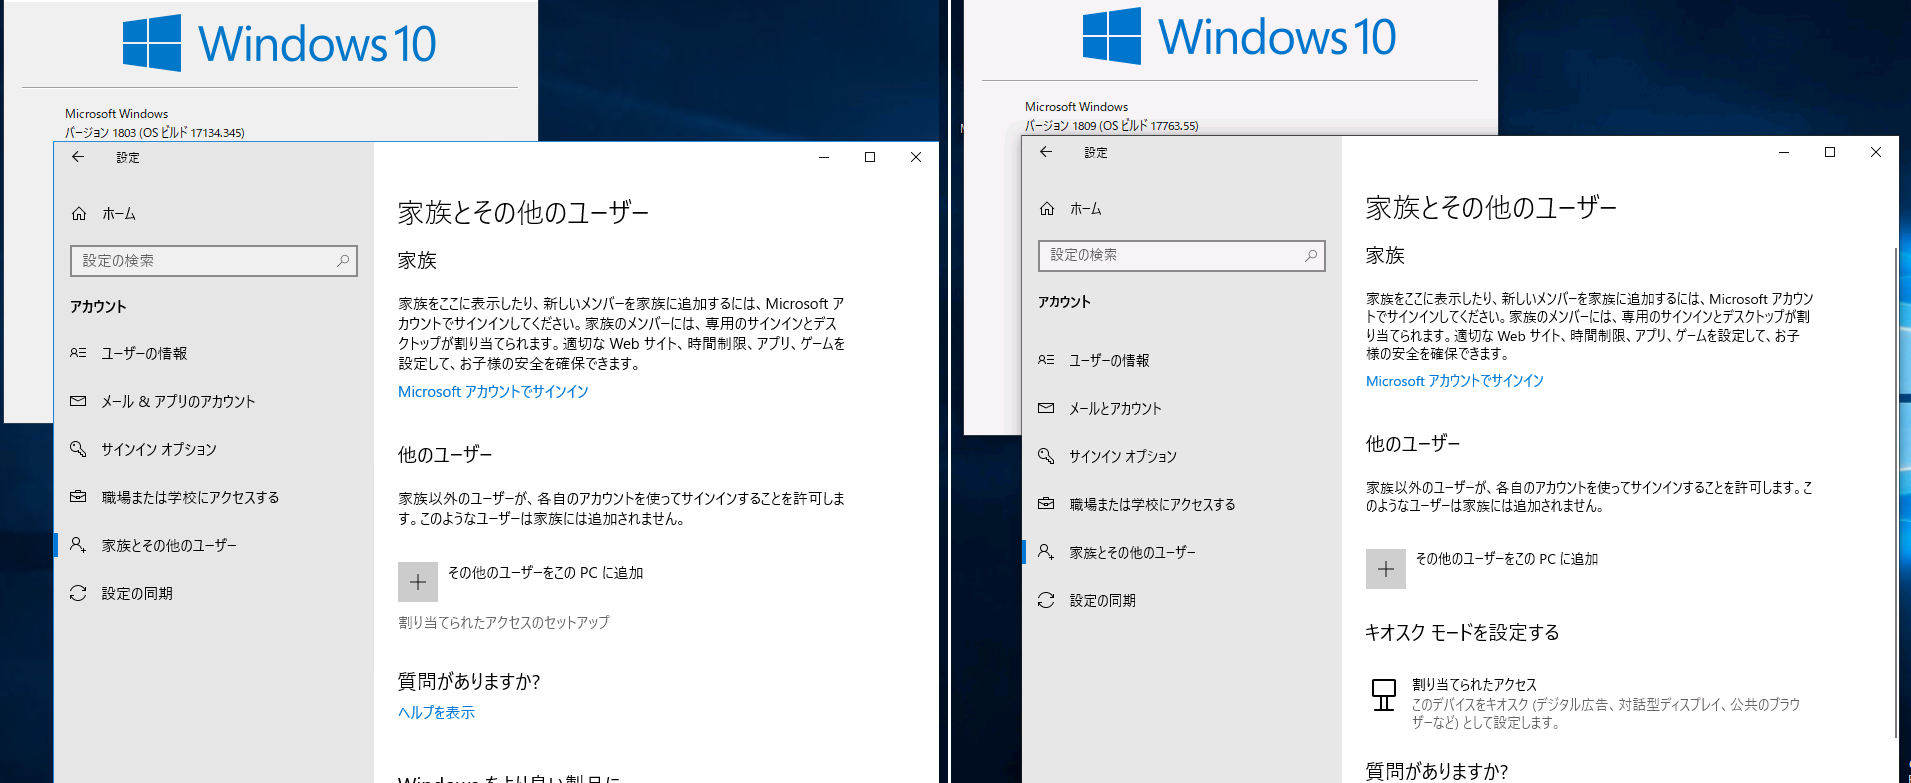 1@Windows 10 o[W1803ijWindows 10 o[W1809iEj̃LIXN[h̃ZbgAbv